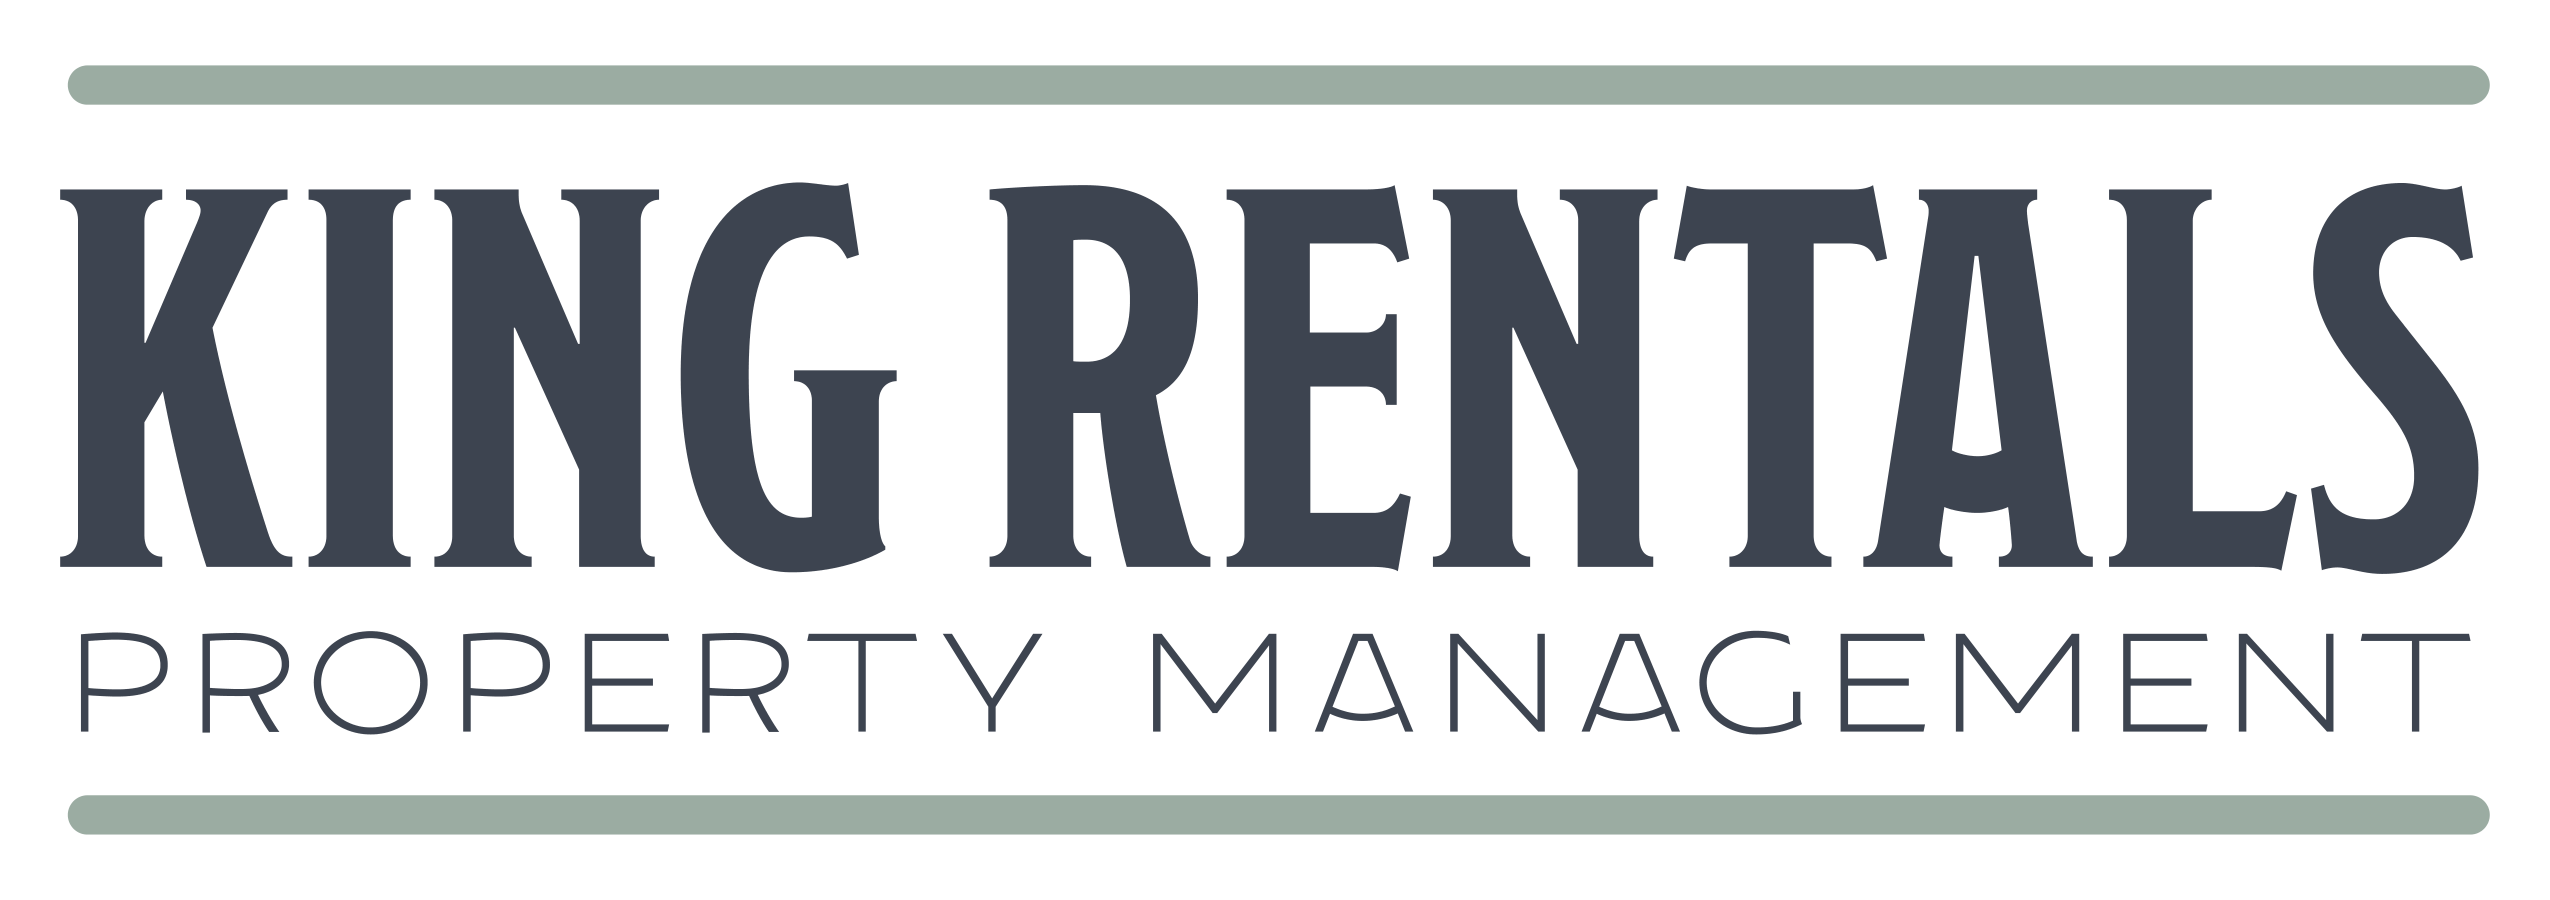 King Rentals Property Management brand logo